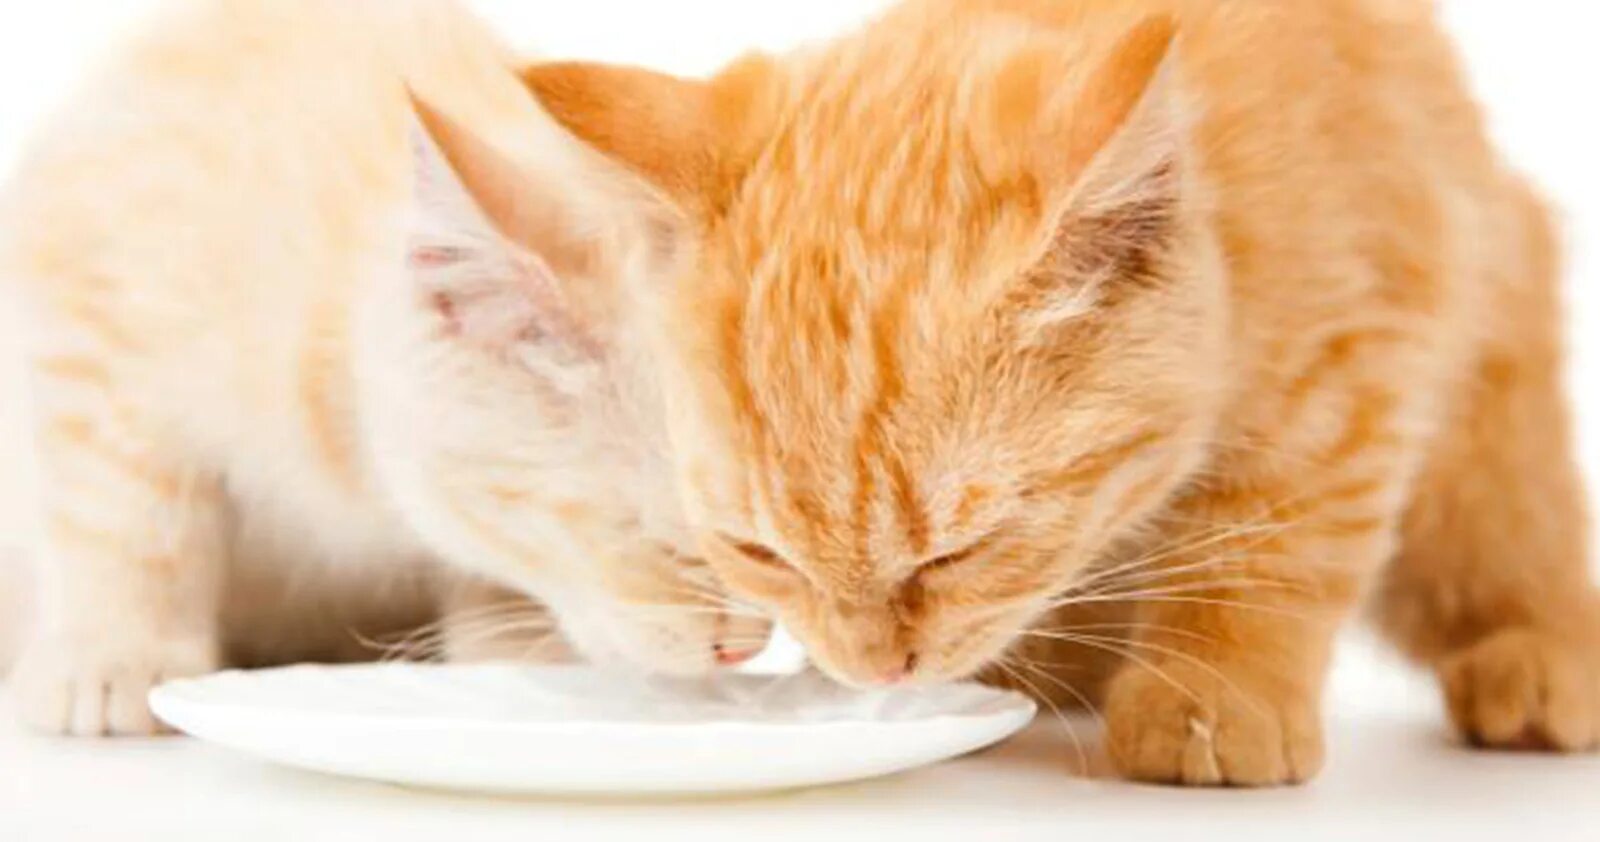 Should cat. Котенок рыжий пьет молоко. Рыжий кот пьет молоко. Котенок лакает молоко. Рыжий котёнок лакает молоко.